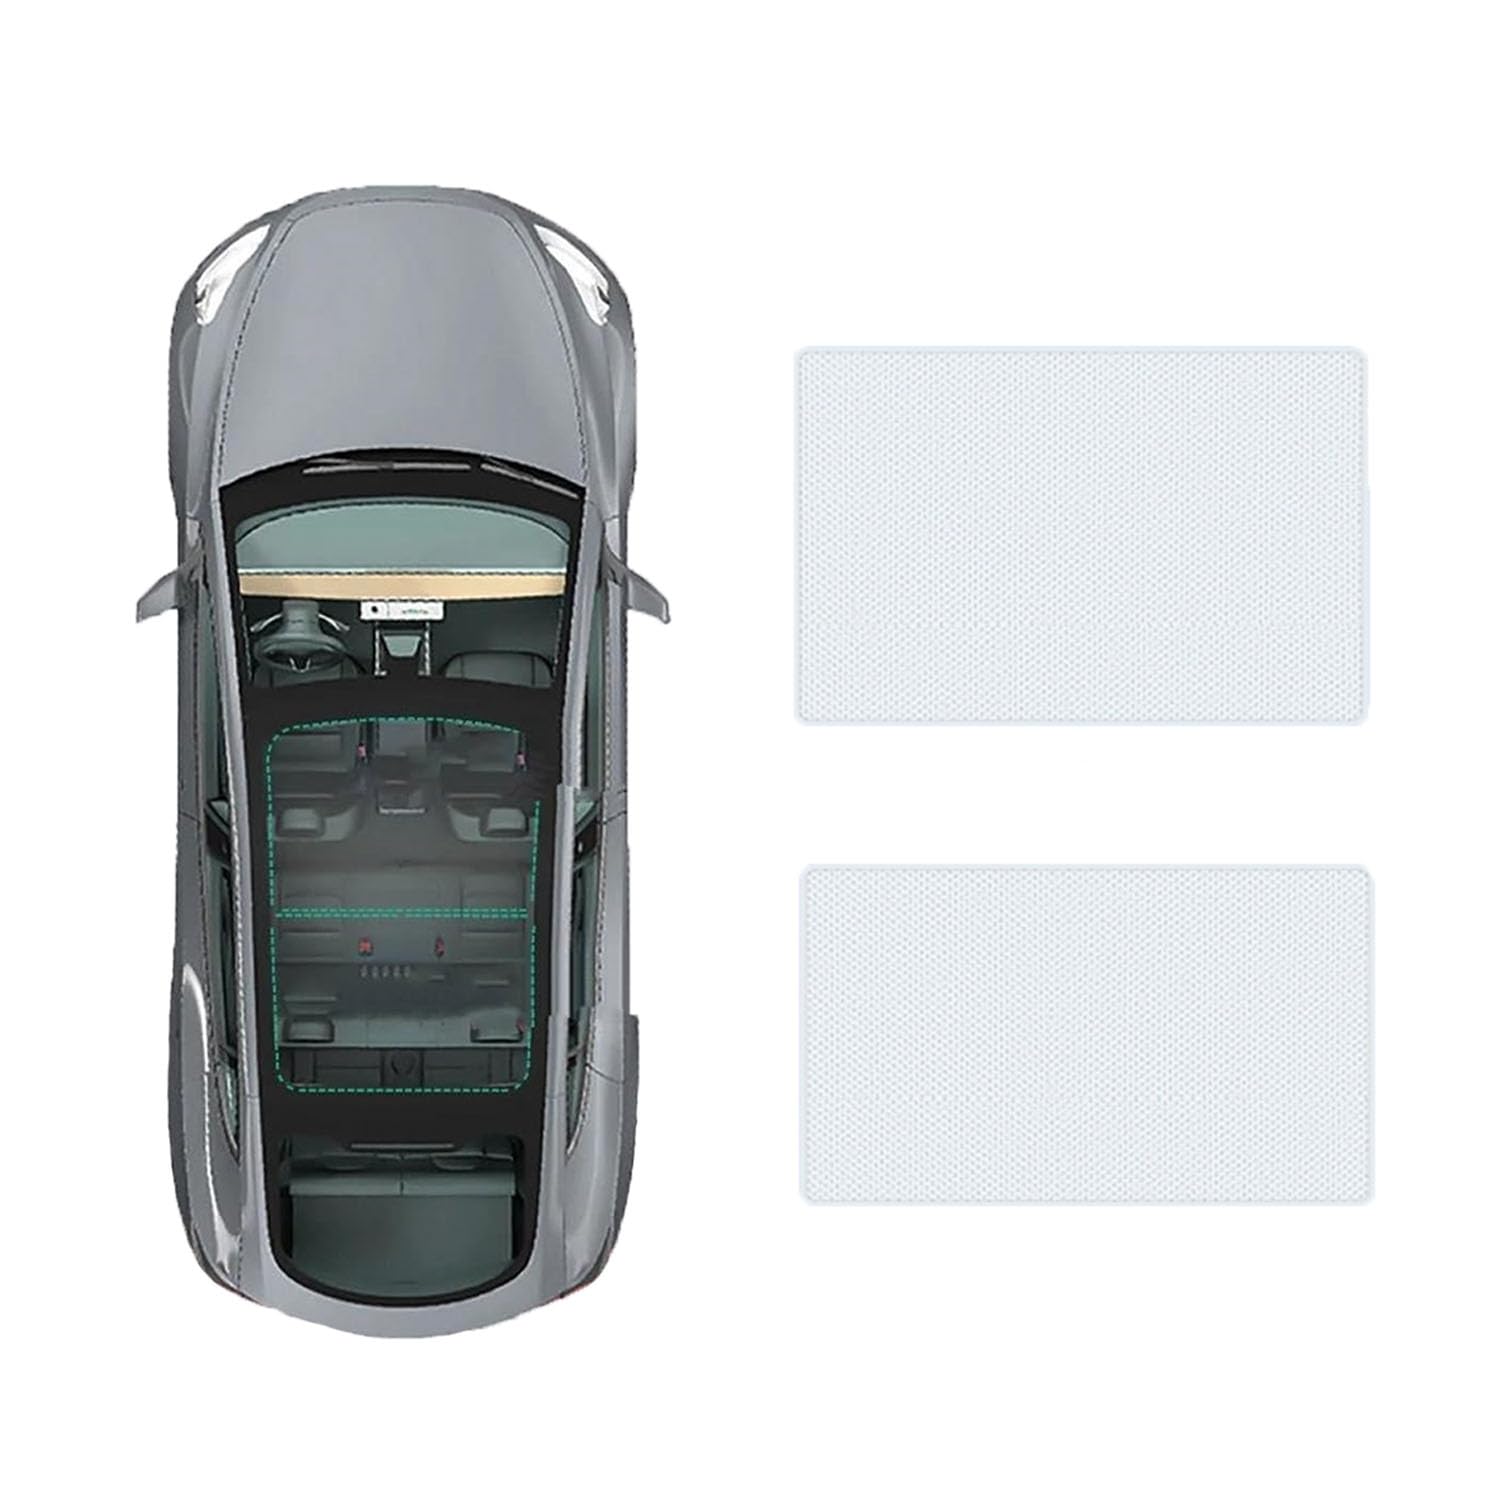 Auto-Schiebedach-Beschattung Für Hyundai Sonata 2020-,Auto Schiebedach Sonnenschutz Dach Wärme Isolierung Beschattung Innen Auto Zubehör,A-Gray white regular Style von LLL6zzzK